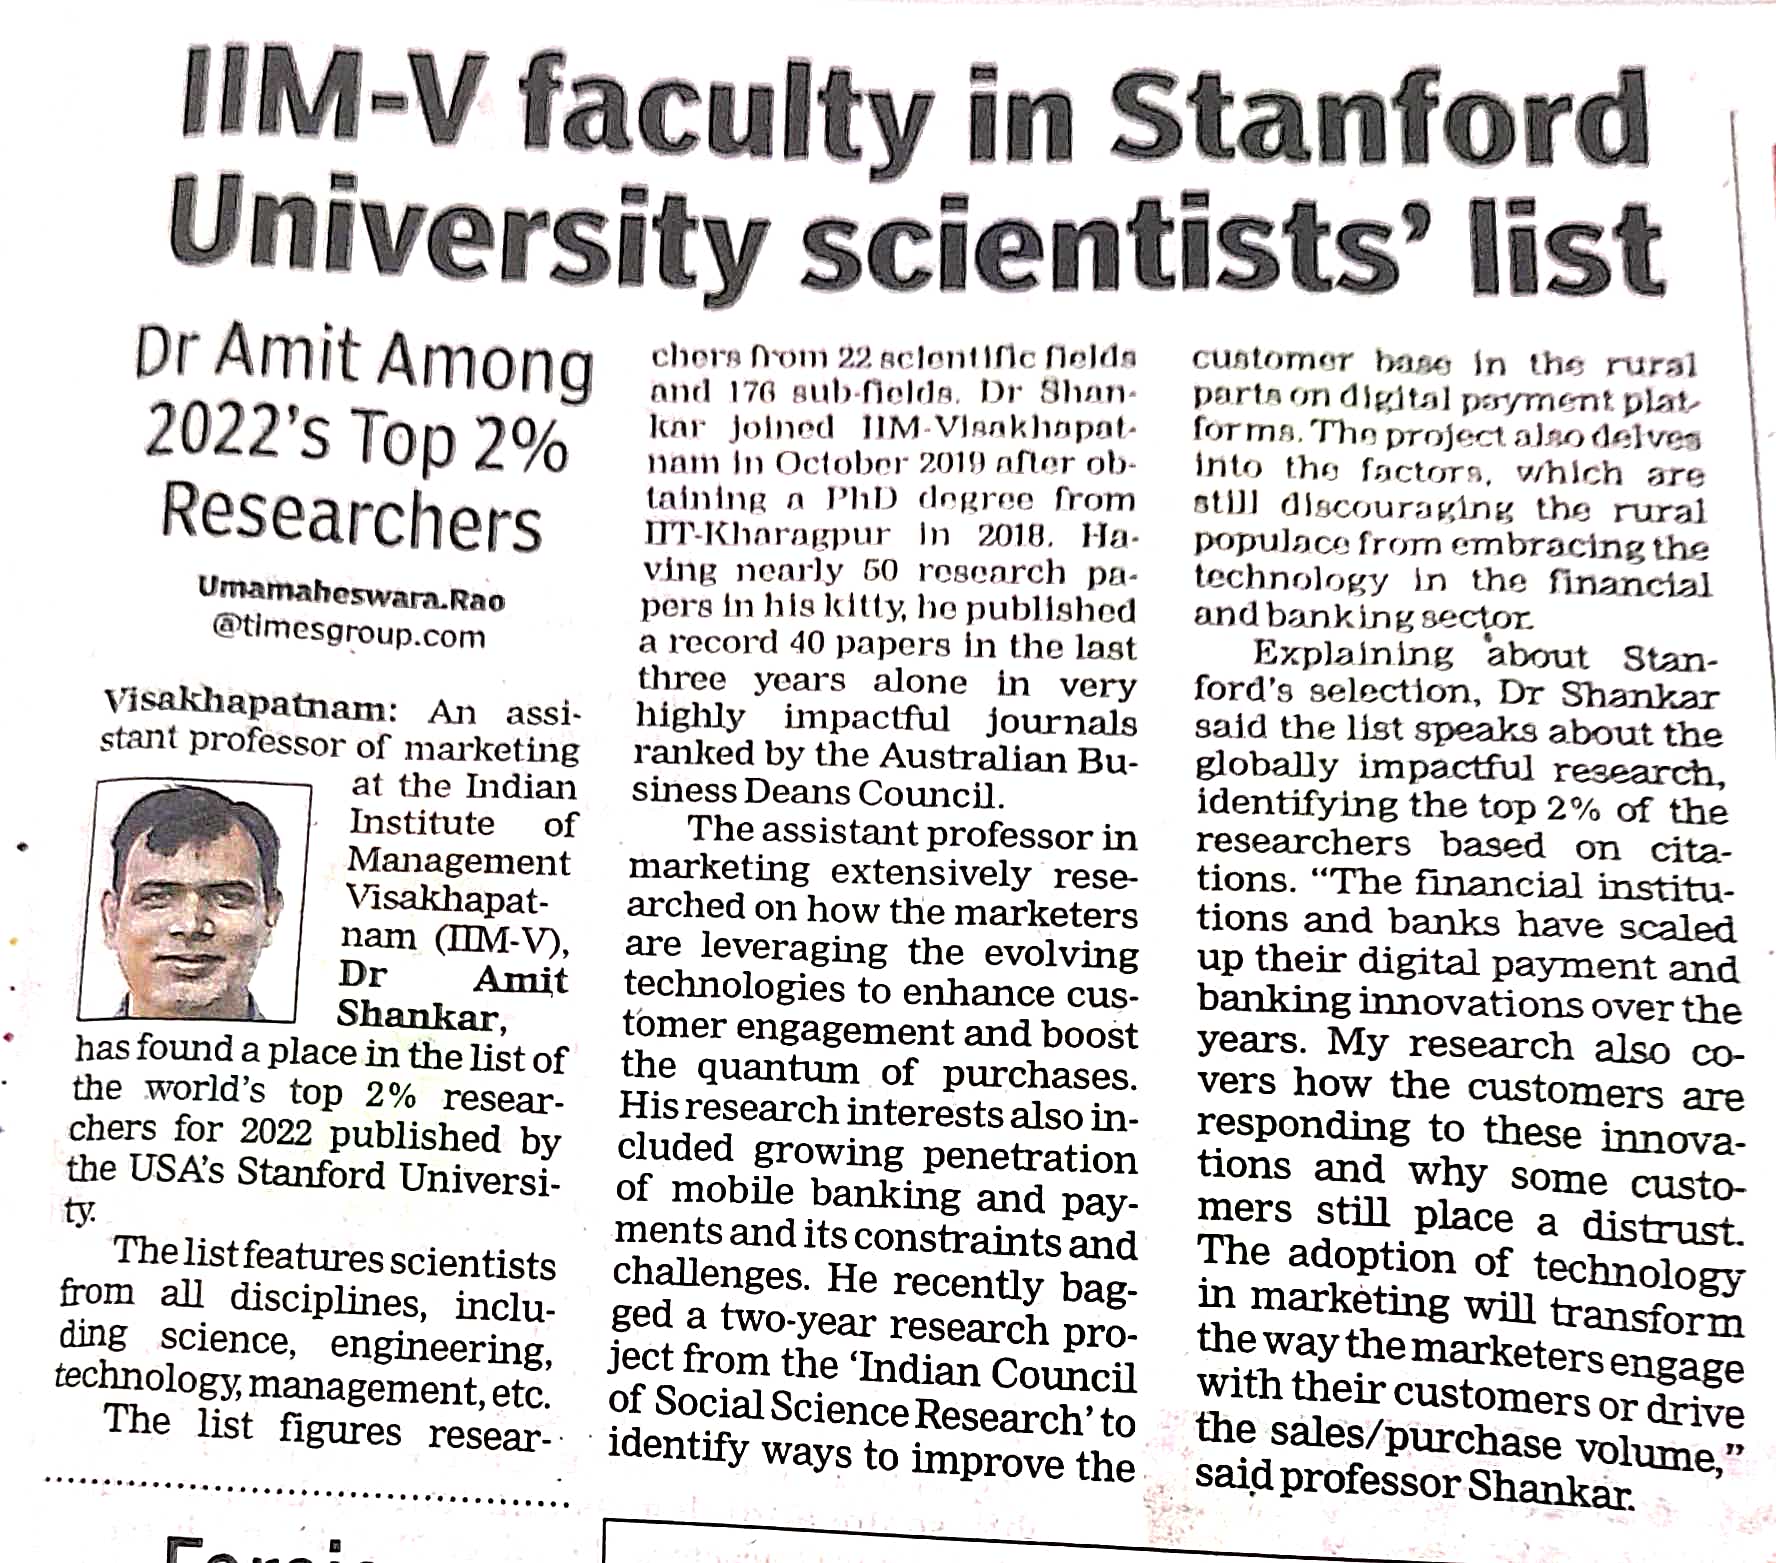 IIMV faculty in Stanford University Scientists list - 16.10.2022